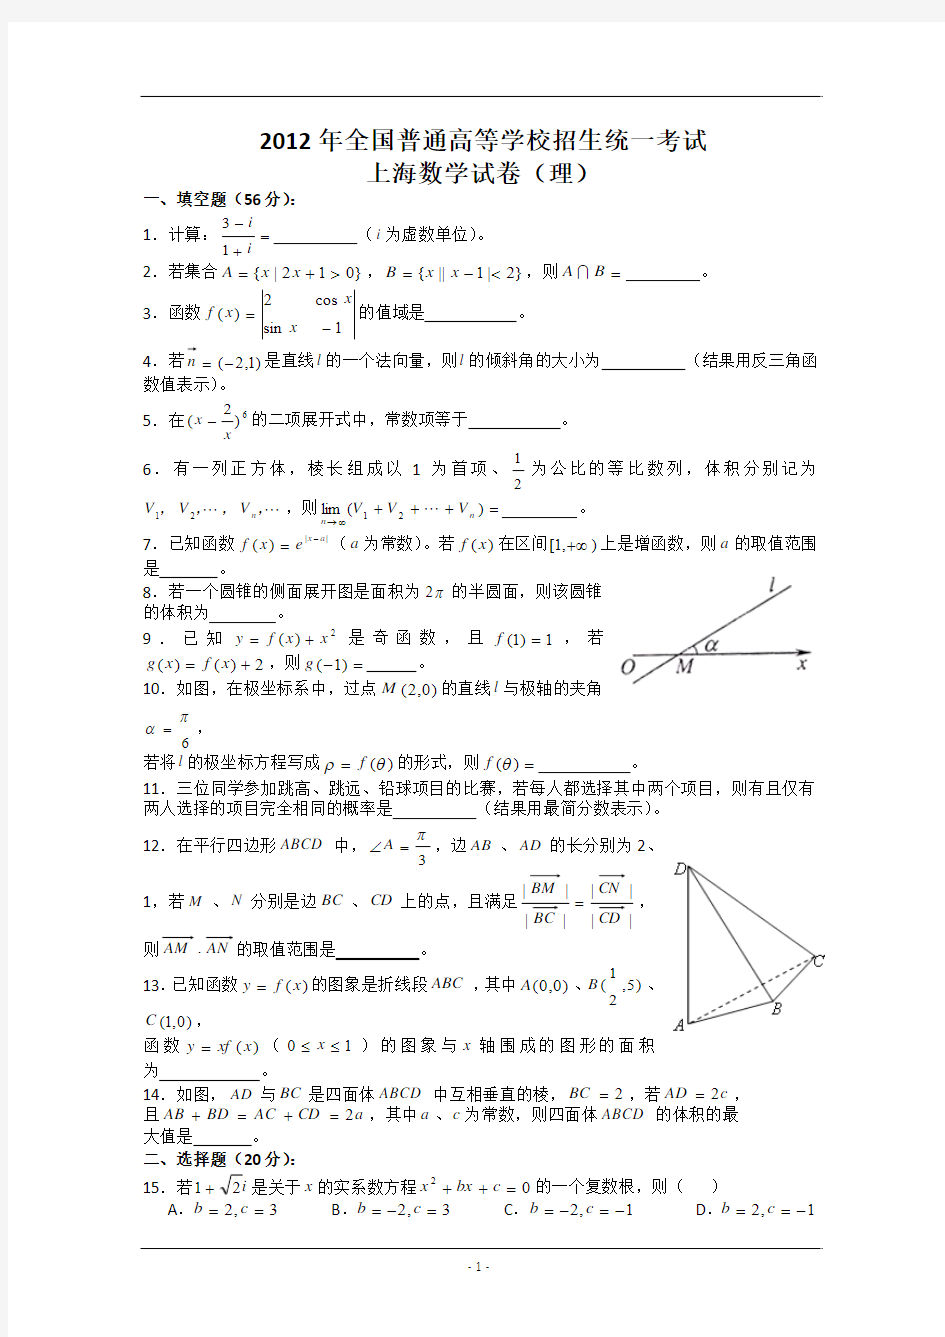 2012年高考真题——理科数学(上海卷)Word版 含答案